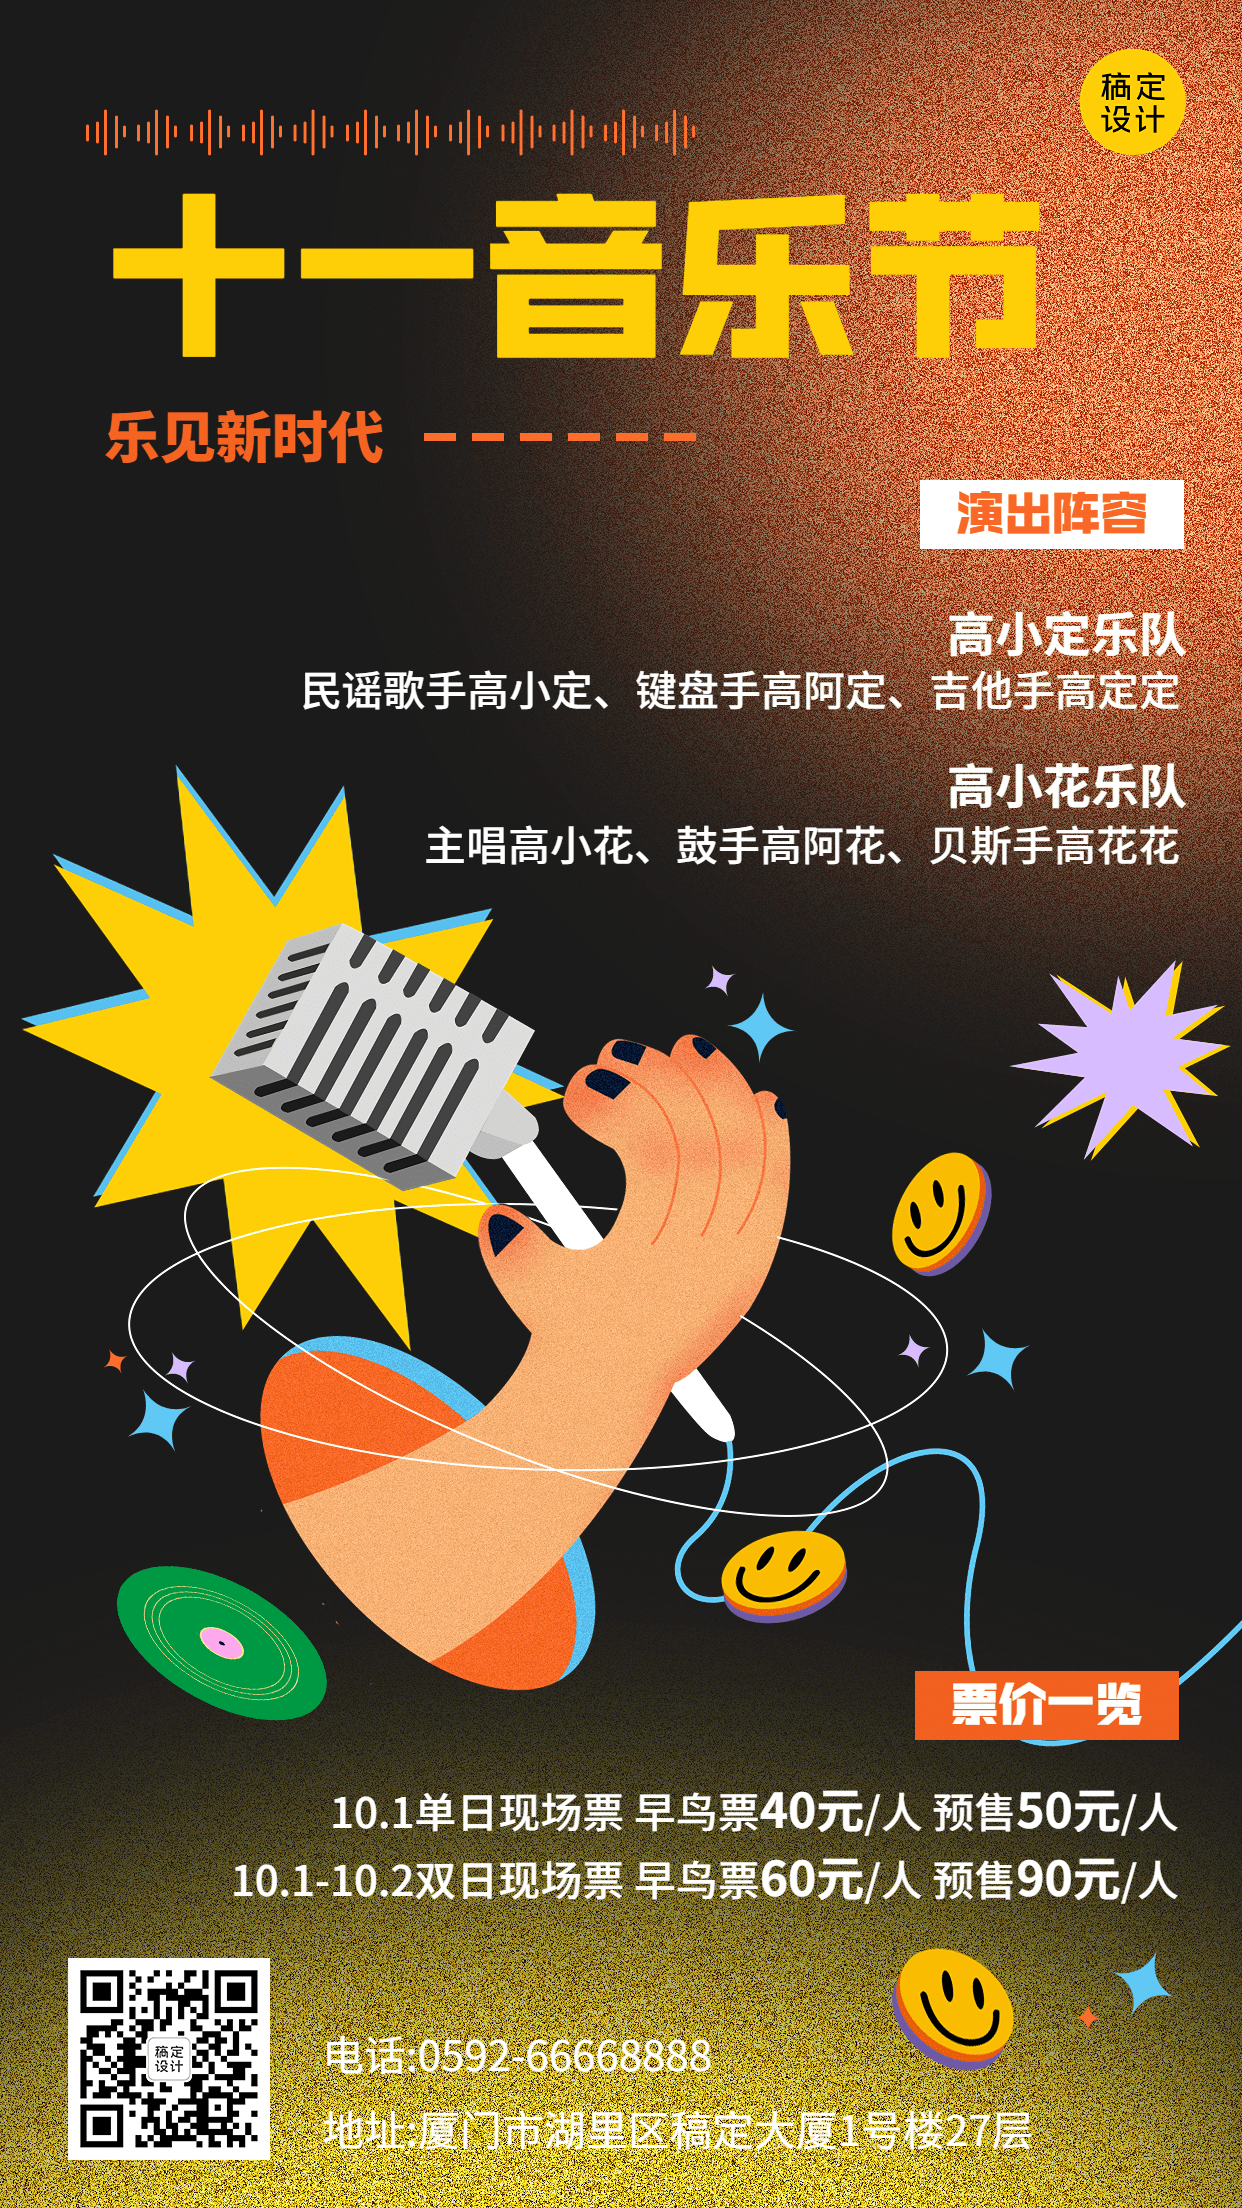 潮酷插画风国庆假期音乐节宣传海报预览效果